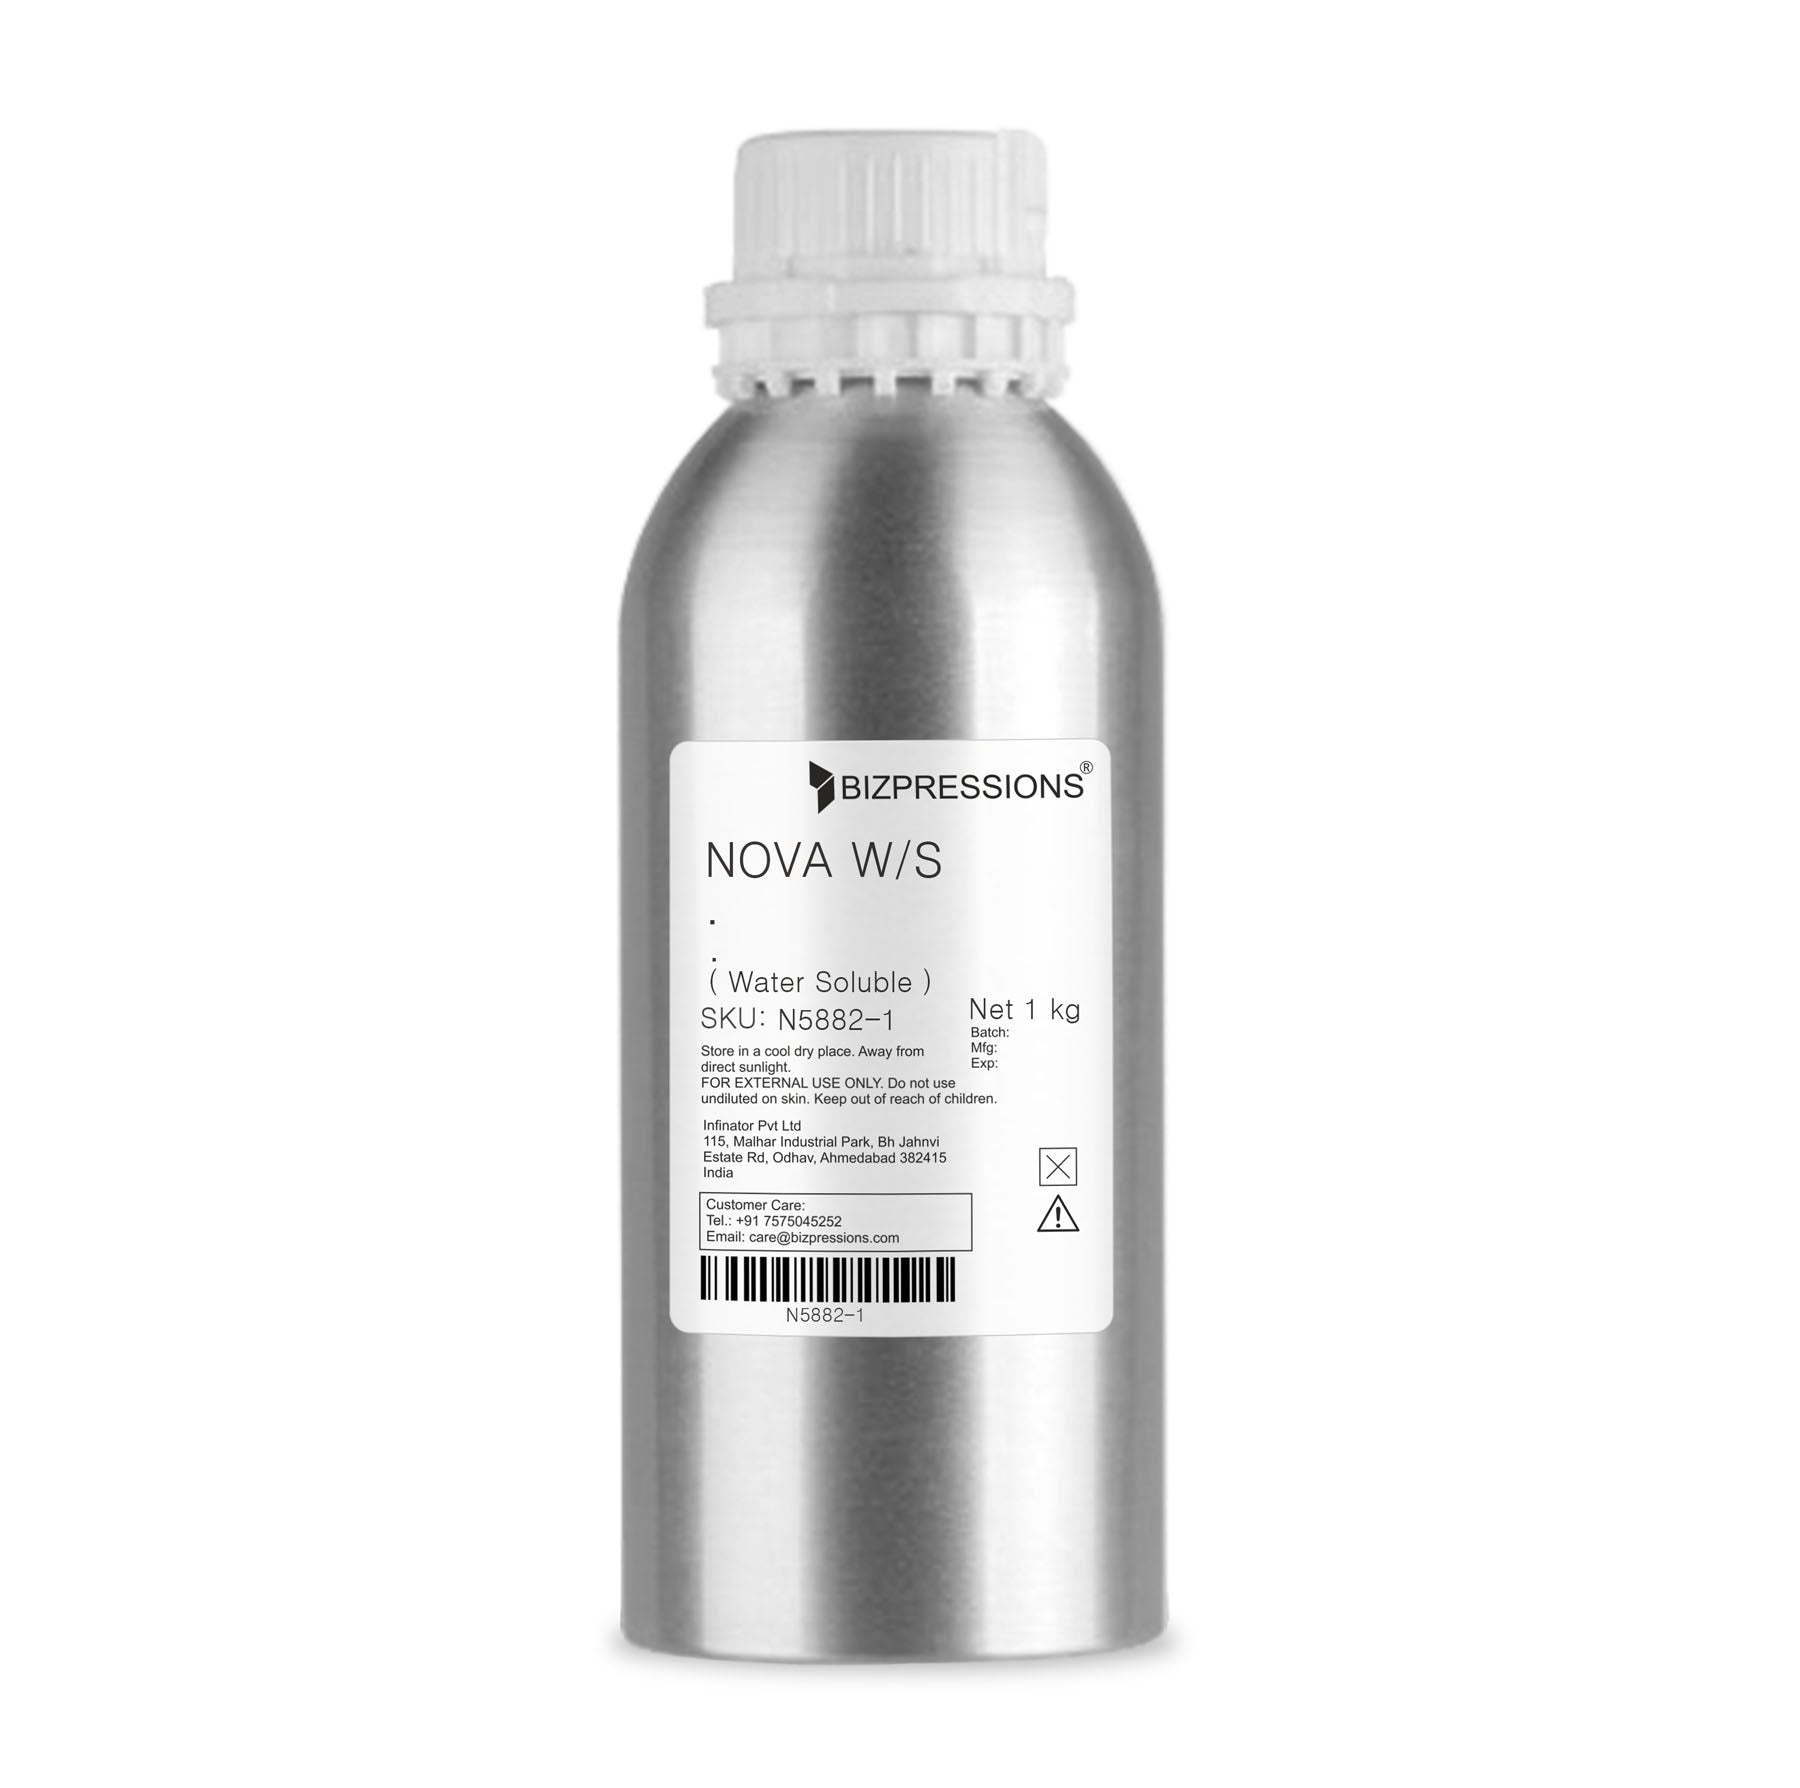 NOVA W/S - Fragrance ( Water Soluble ) - 1 kg